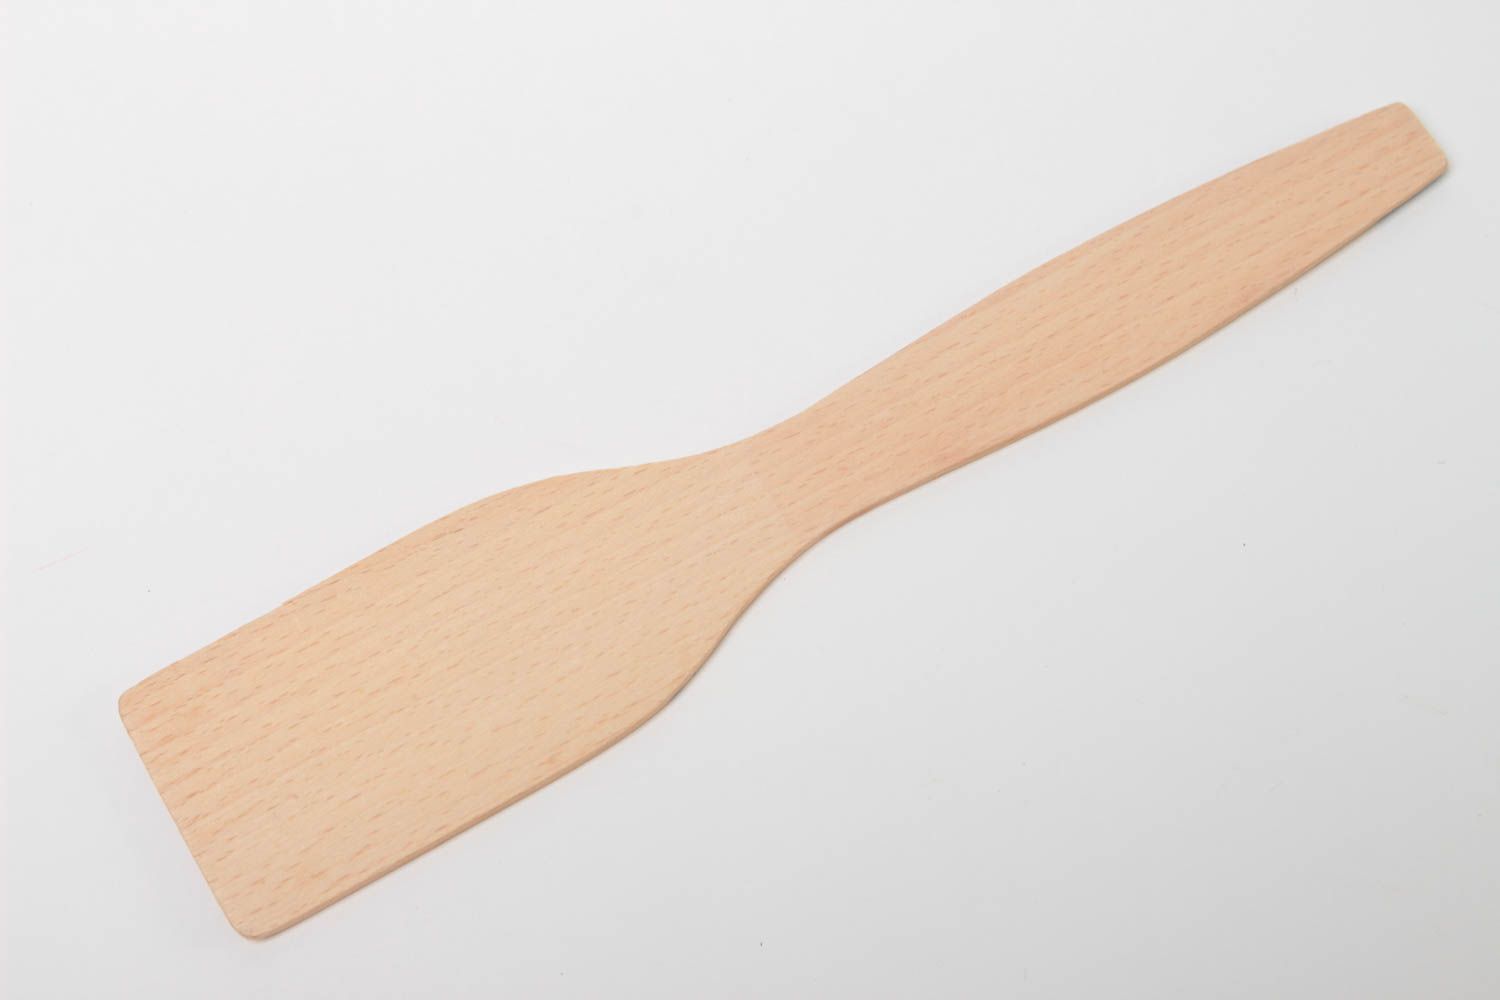 Bright handmade wooden spatula decorative kitchen utensils kitchen designs photo 4